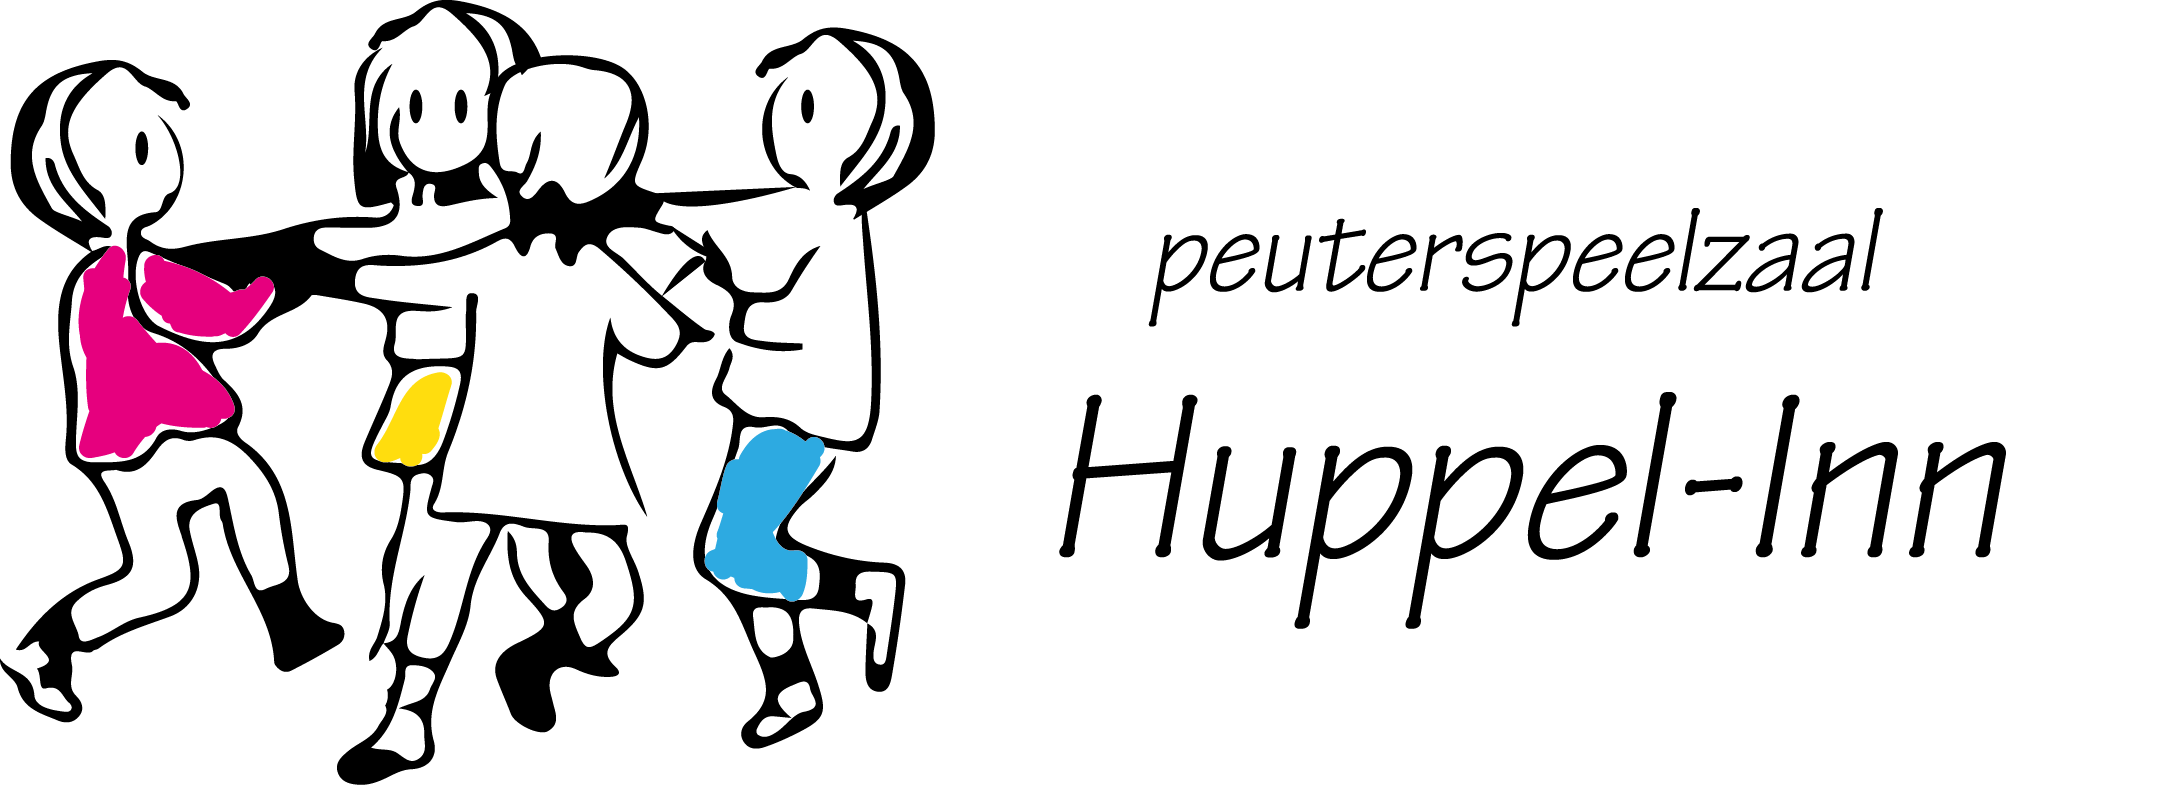 Peuterspeelzaal Huppel-inn